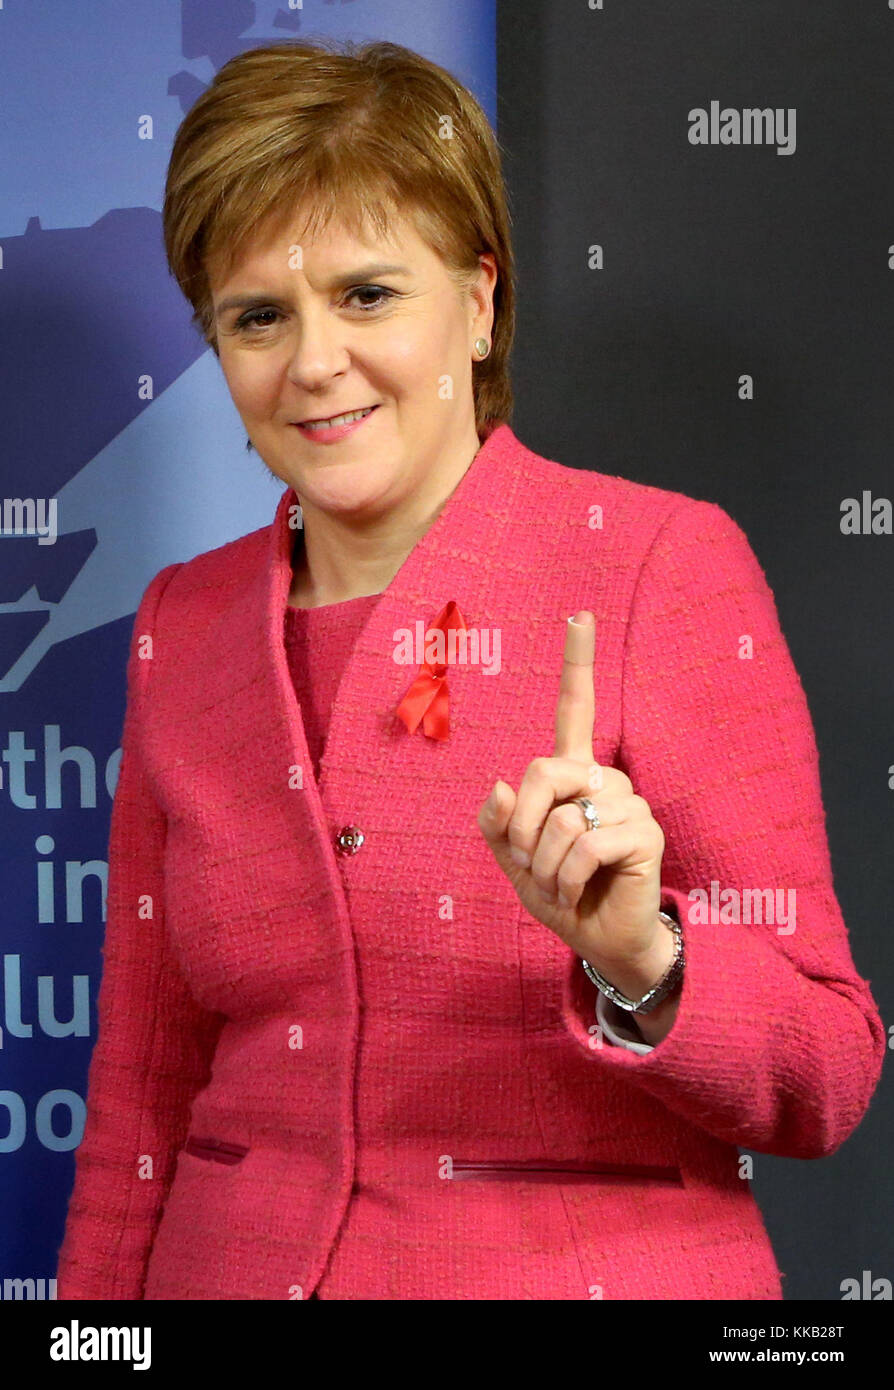 Premier ministre Nicola Sturgeon contient jusqu'son doigt avec un plâtre sur après la prise d'un test de dépistage du VIH, au Parlement de l'Écosse, Édimbourg, avant la Journée mondiale du sida, le vendredi 1 décembre. Banque D'Images